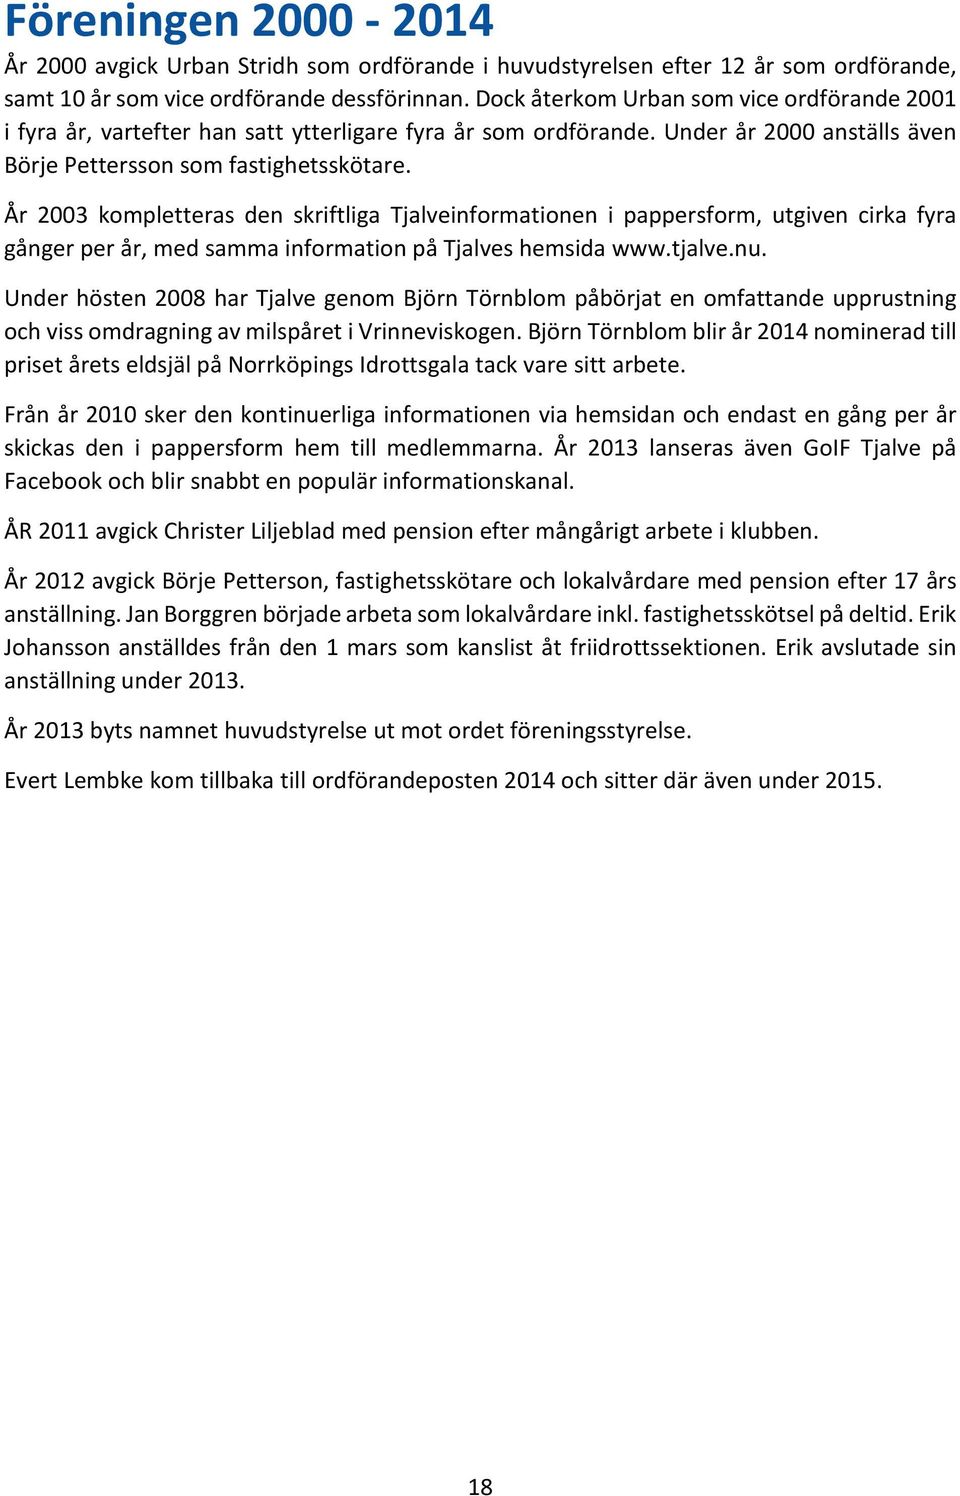 År 2003 kompletteras den skriftliga Tjalveinformationen i pappersform, utgiven cirka fyra gånger per år, med samma information på Tjalves hemsida www.tjalve.nu.